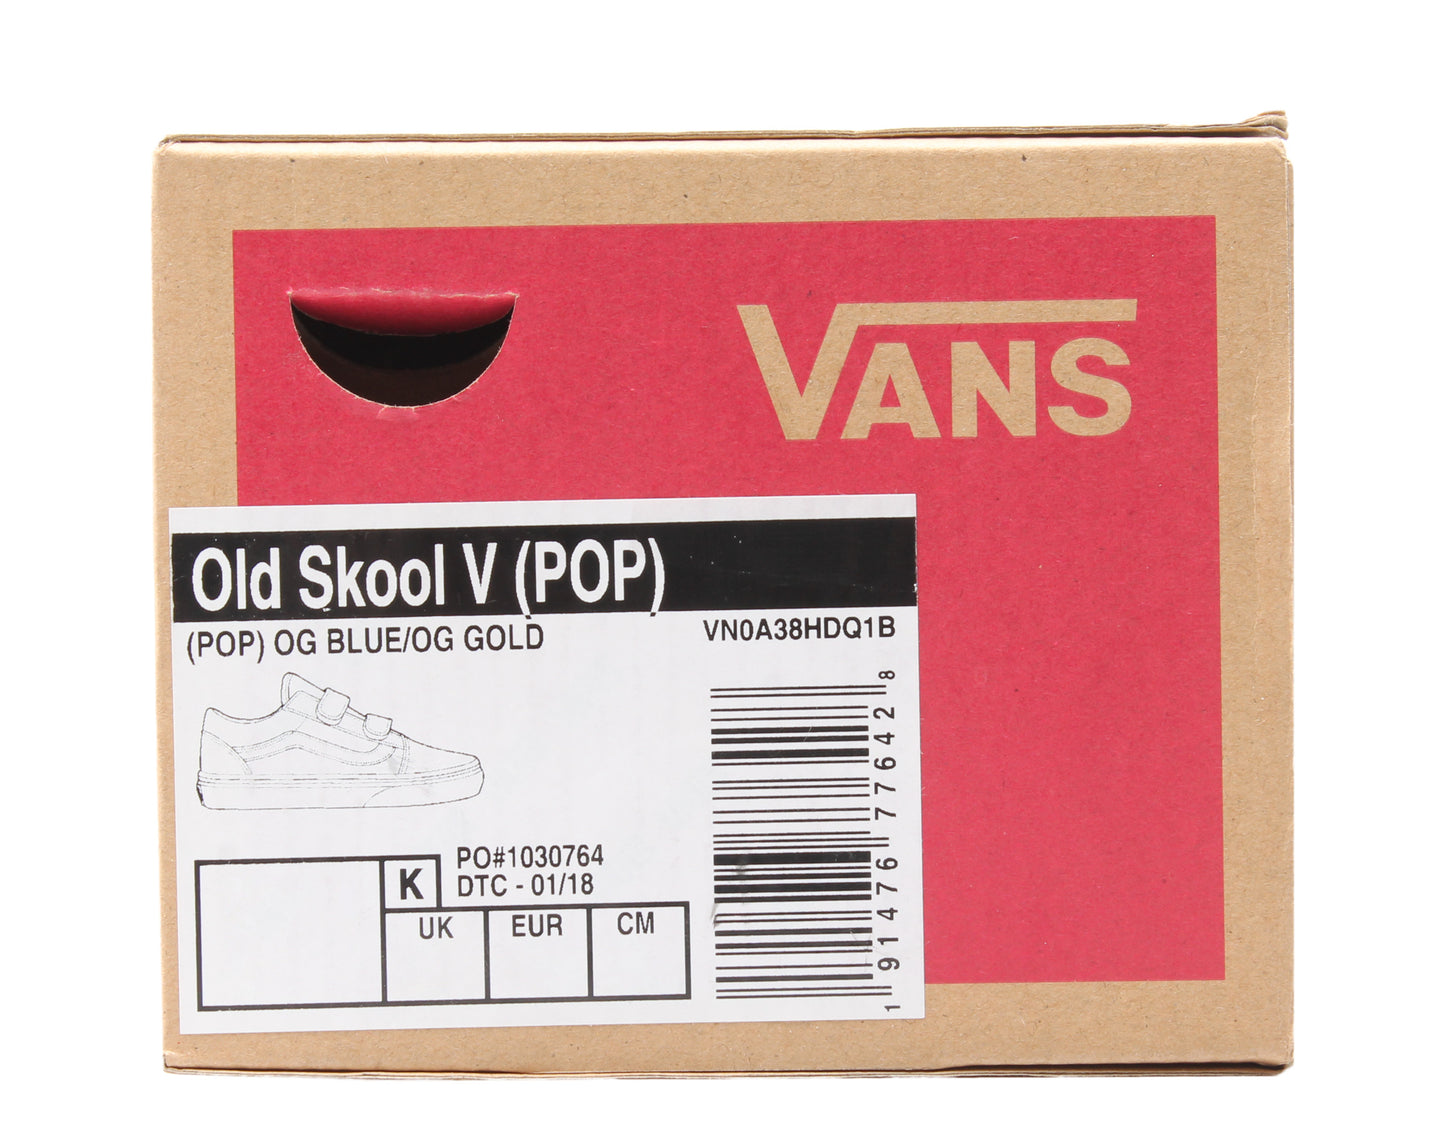 Vans Old Skool V POP Little/Big Kids Low Top Sneakers